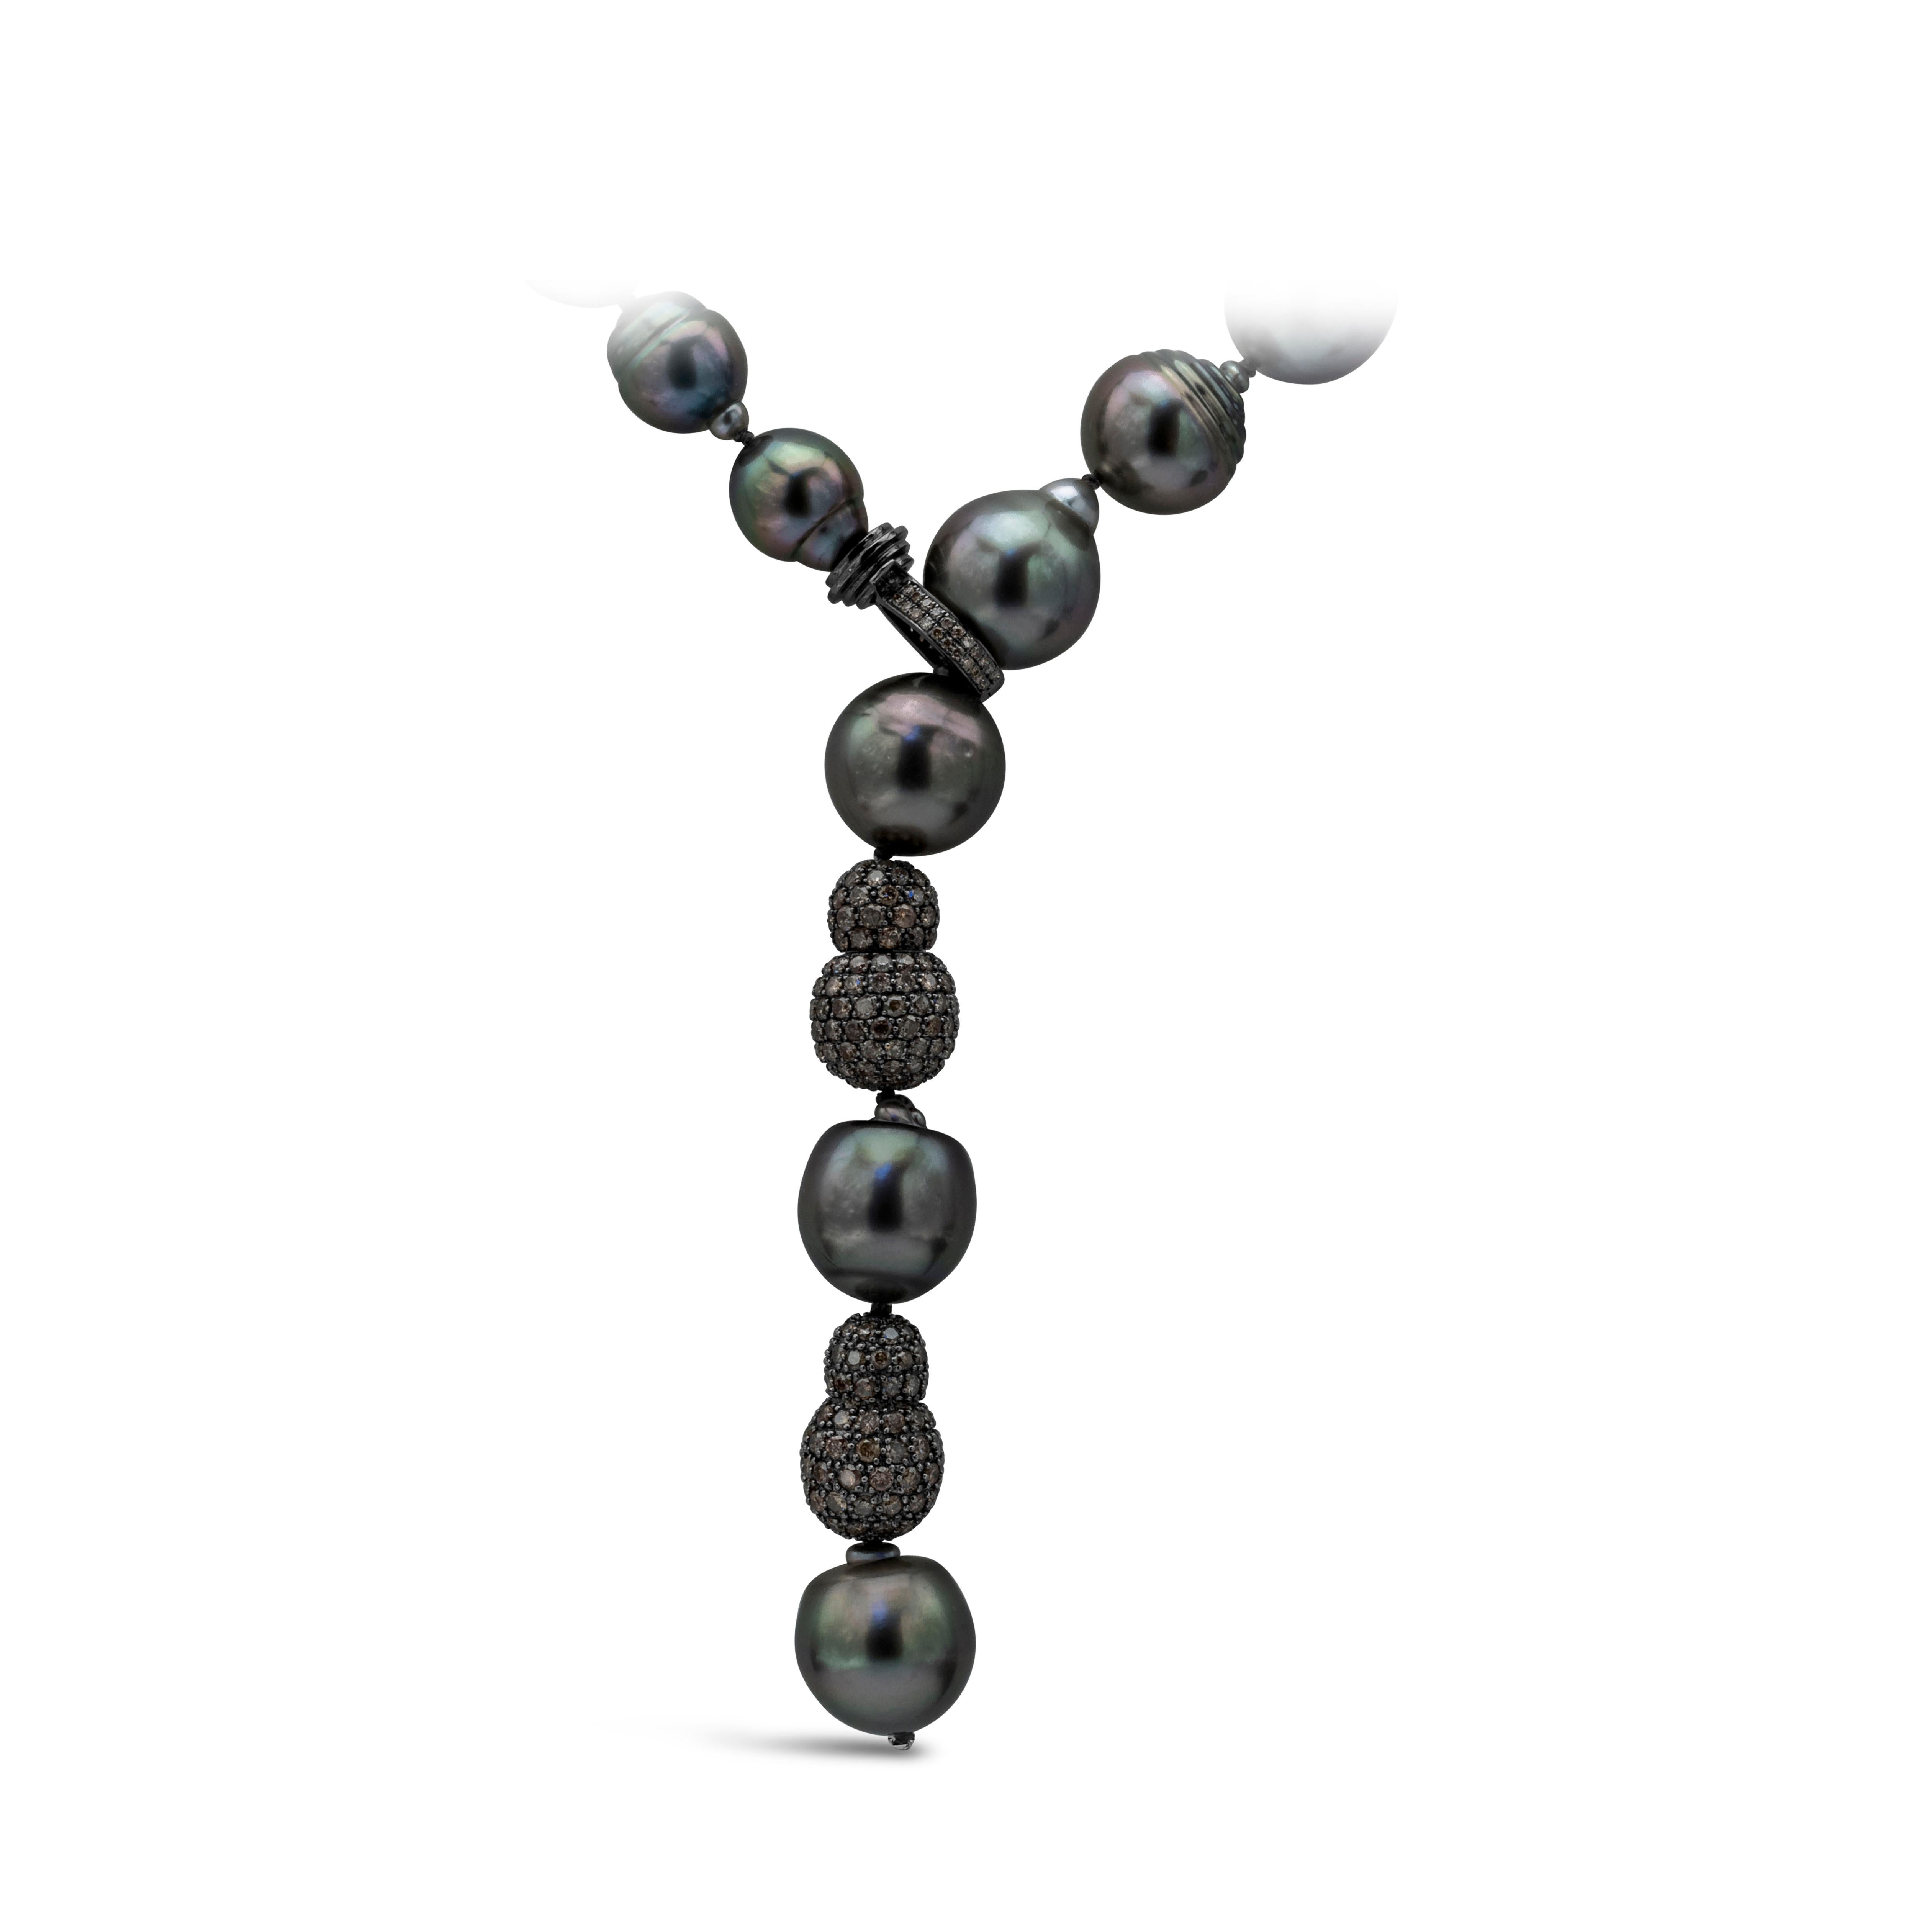 Eine wunderschöne Perlenkette mit einer 10-13,7 mm großen schwarzen Barockperle aus Tahiti mit Diamantverschluss und 2 mit Diamanten besetzten Kugeln. Der Diamant wiegt insgesamt 4,00 Karat. Hergestellt aus 18K schwarzem Rhodium.

Das Modell ist mit